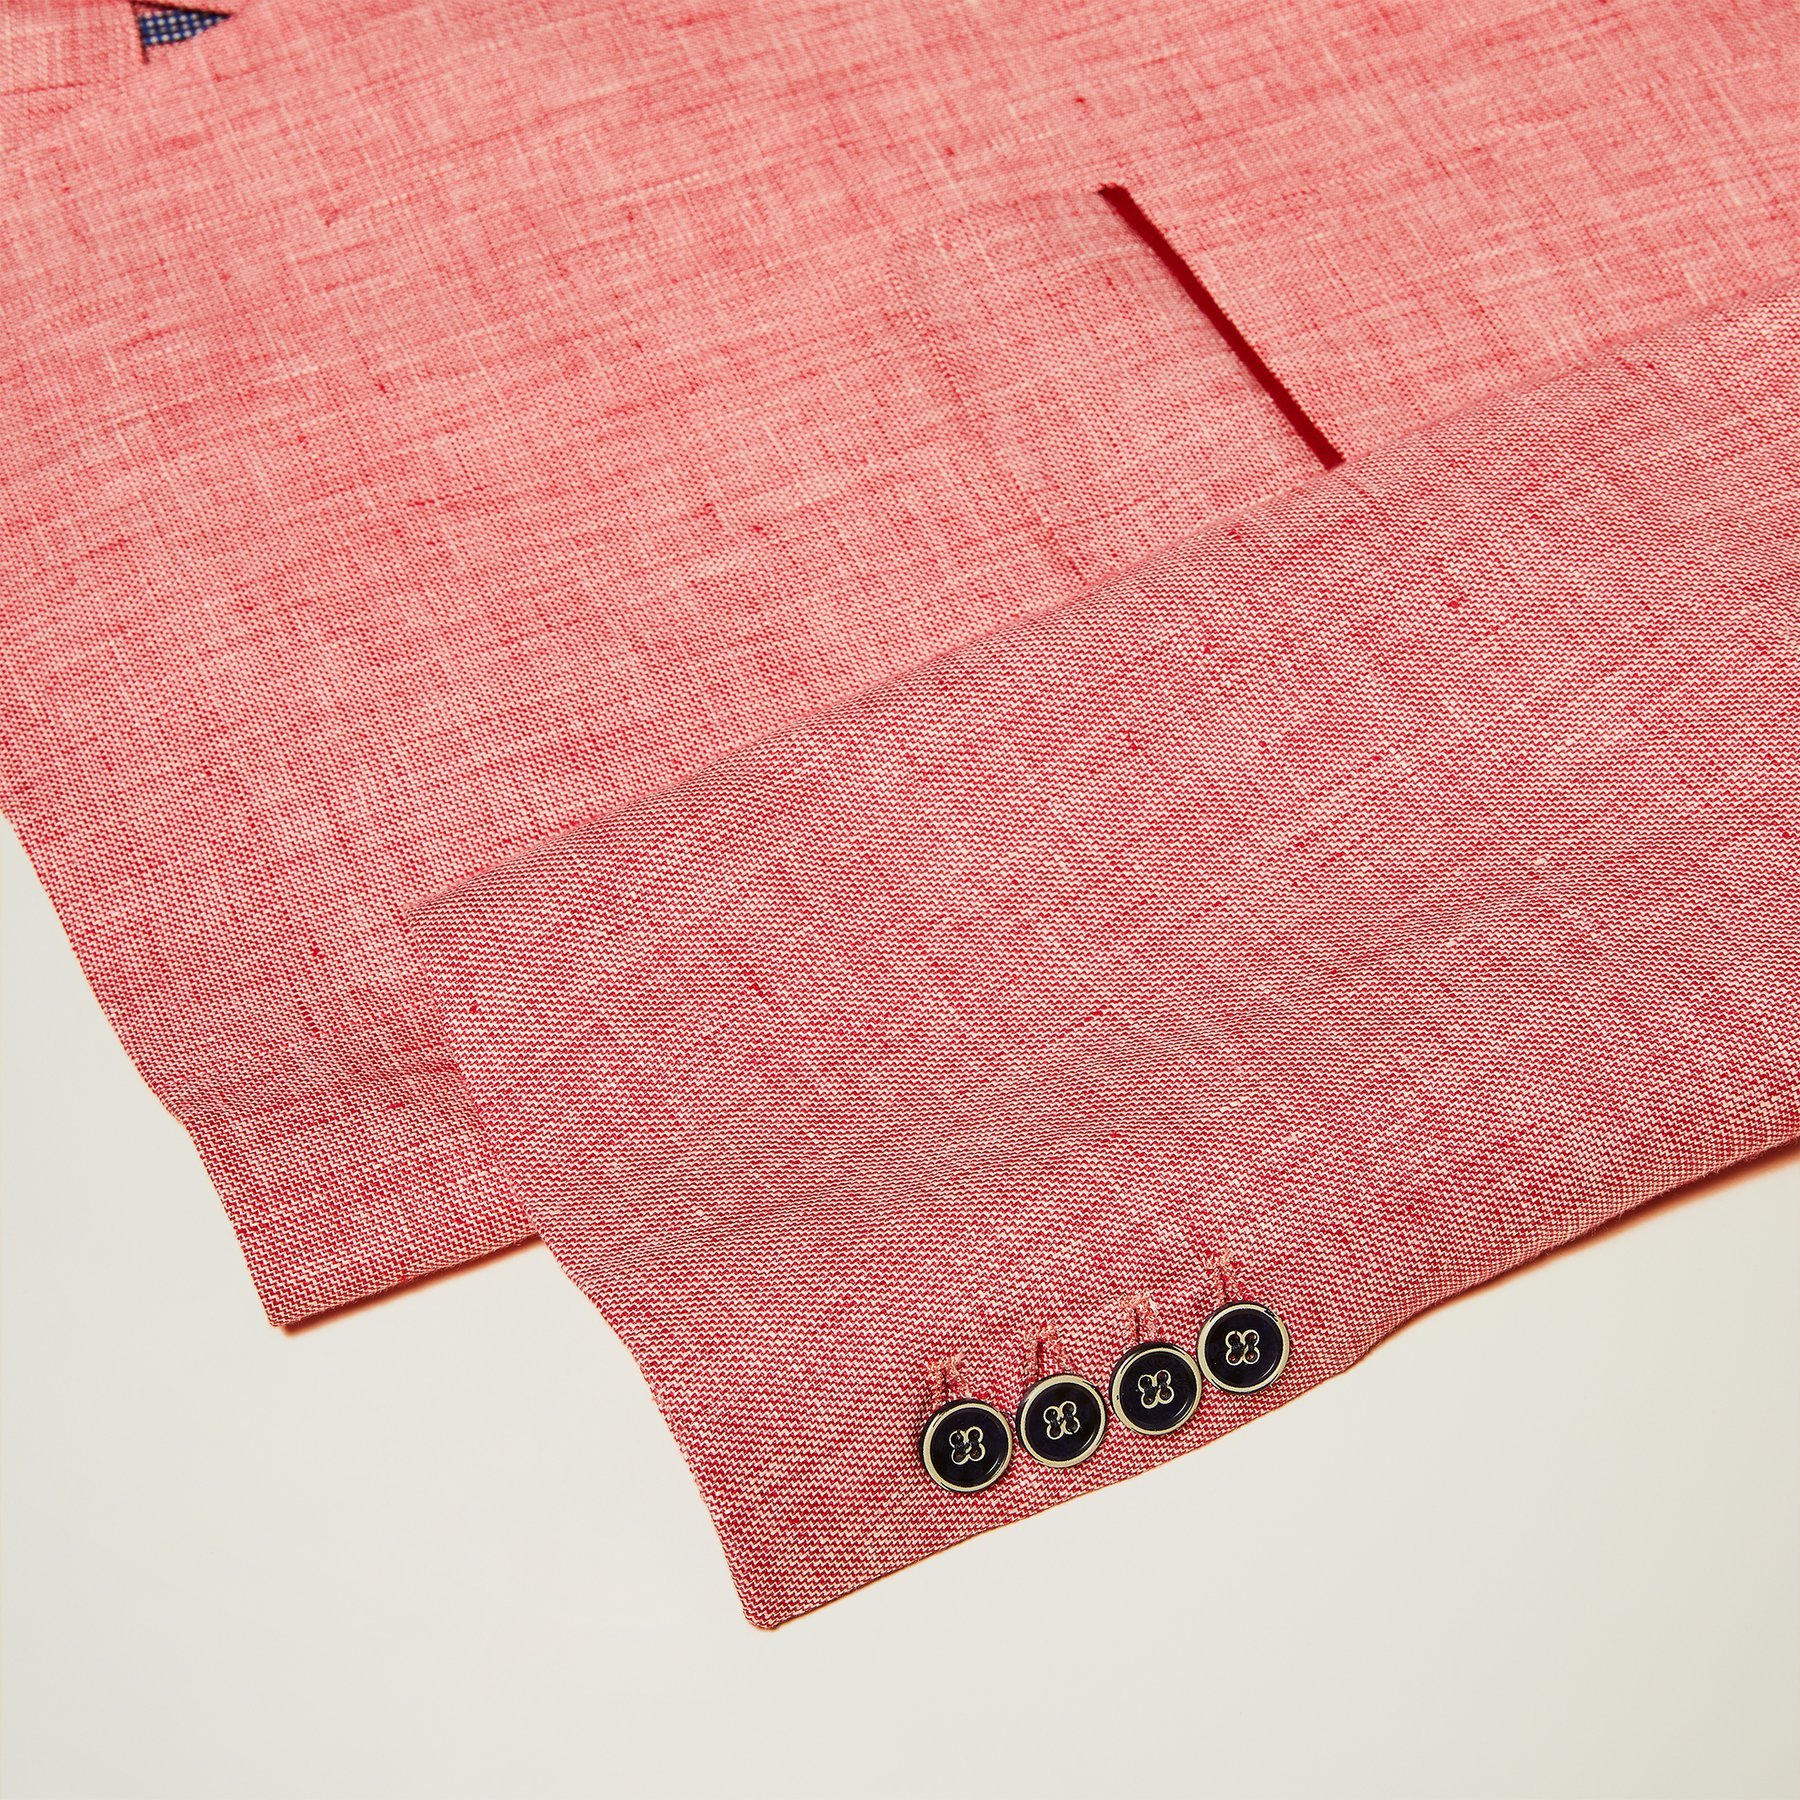 100% Linen raspberry fabric of a shirt